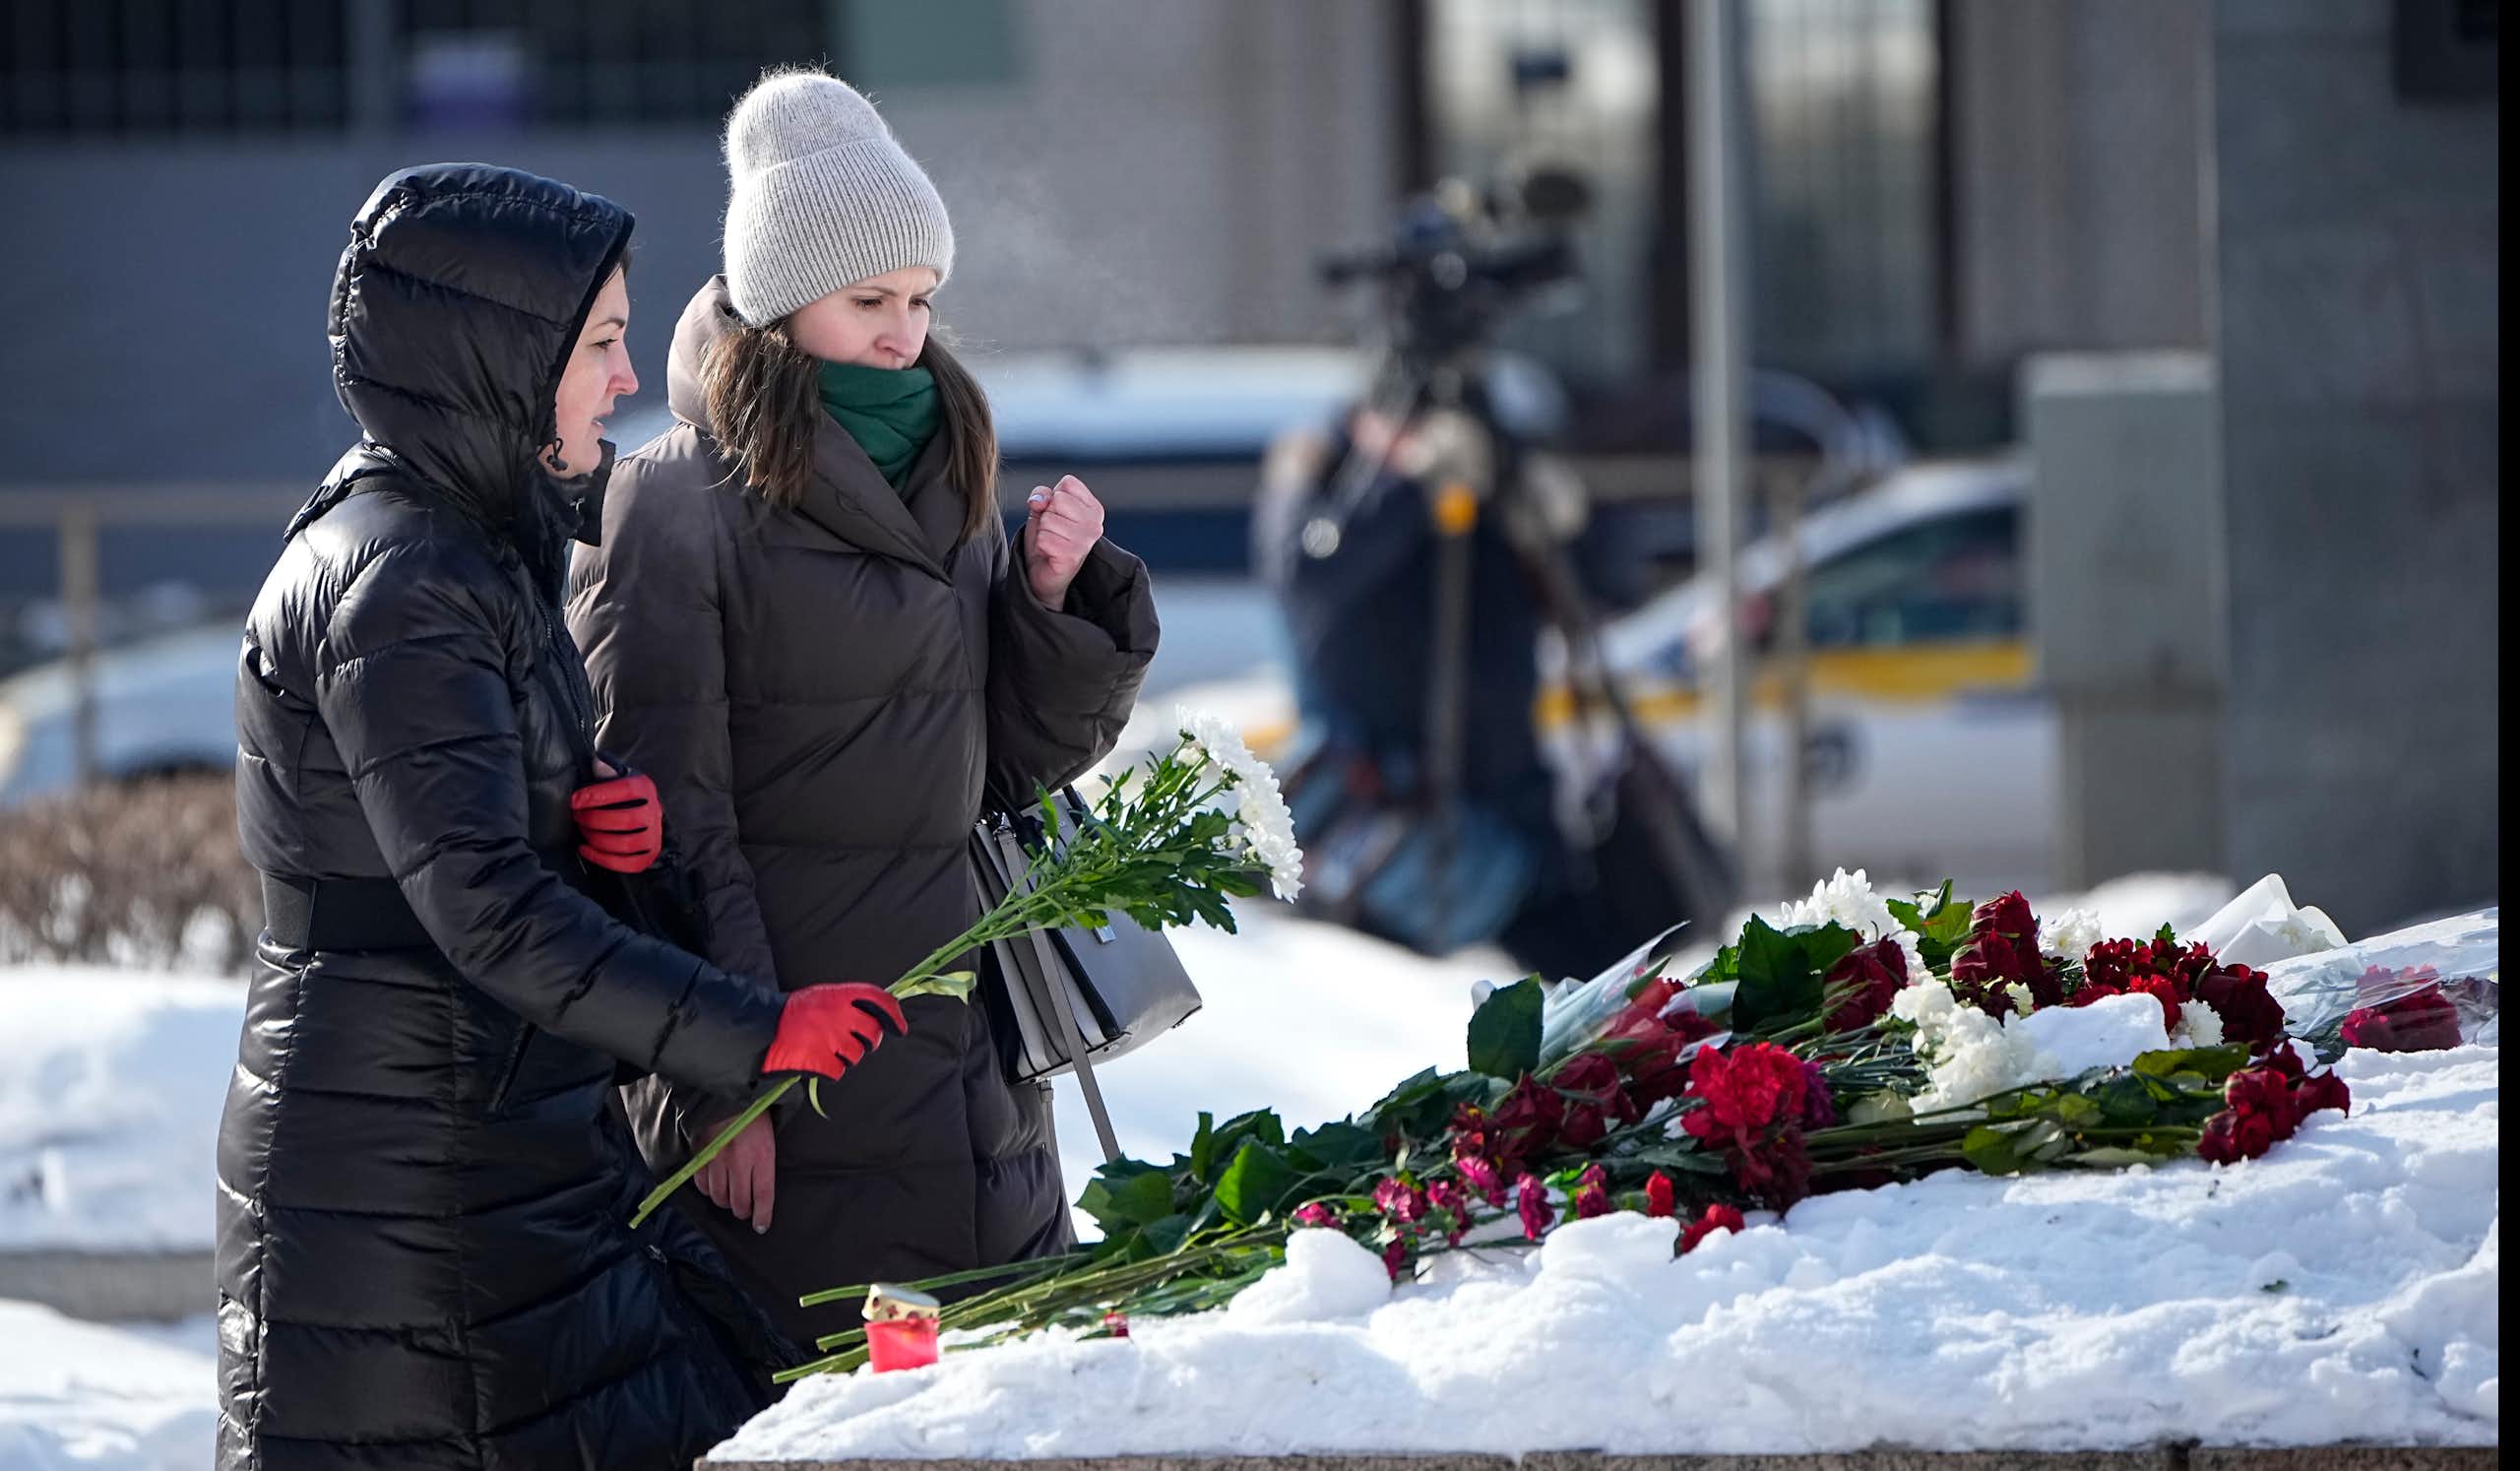 Deux femmes vêtues de longs manteaux d'hiver déposent des fleurs sur un autel de fortune enneigé, au pied d'un monument.